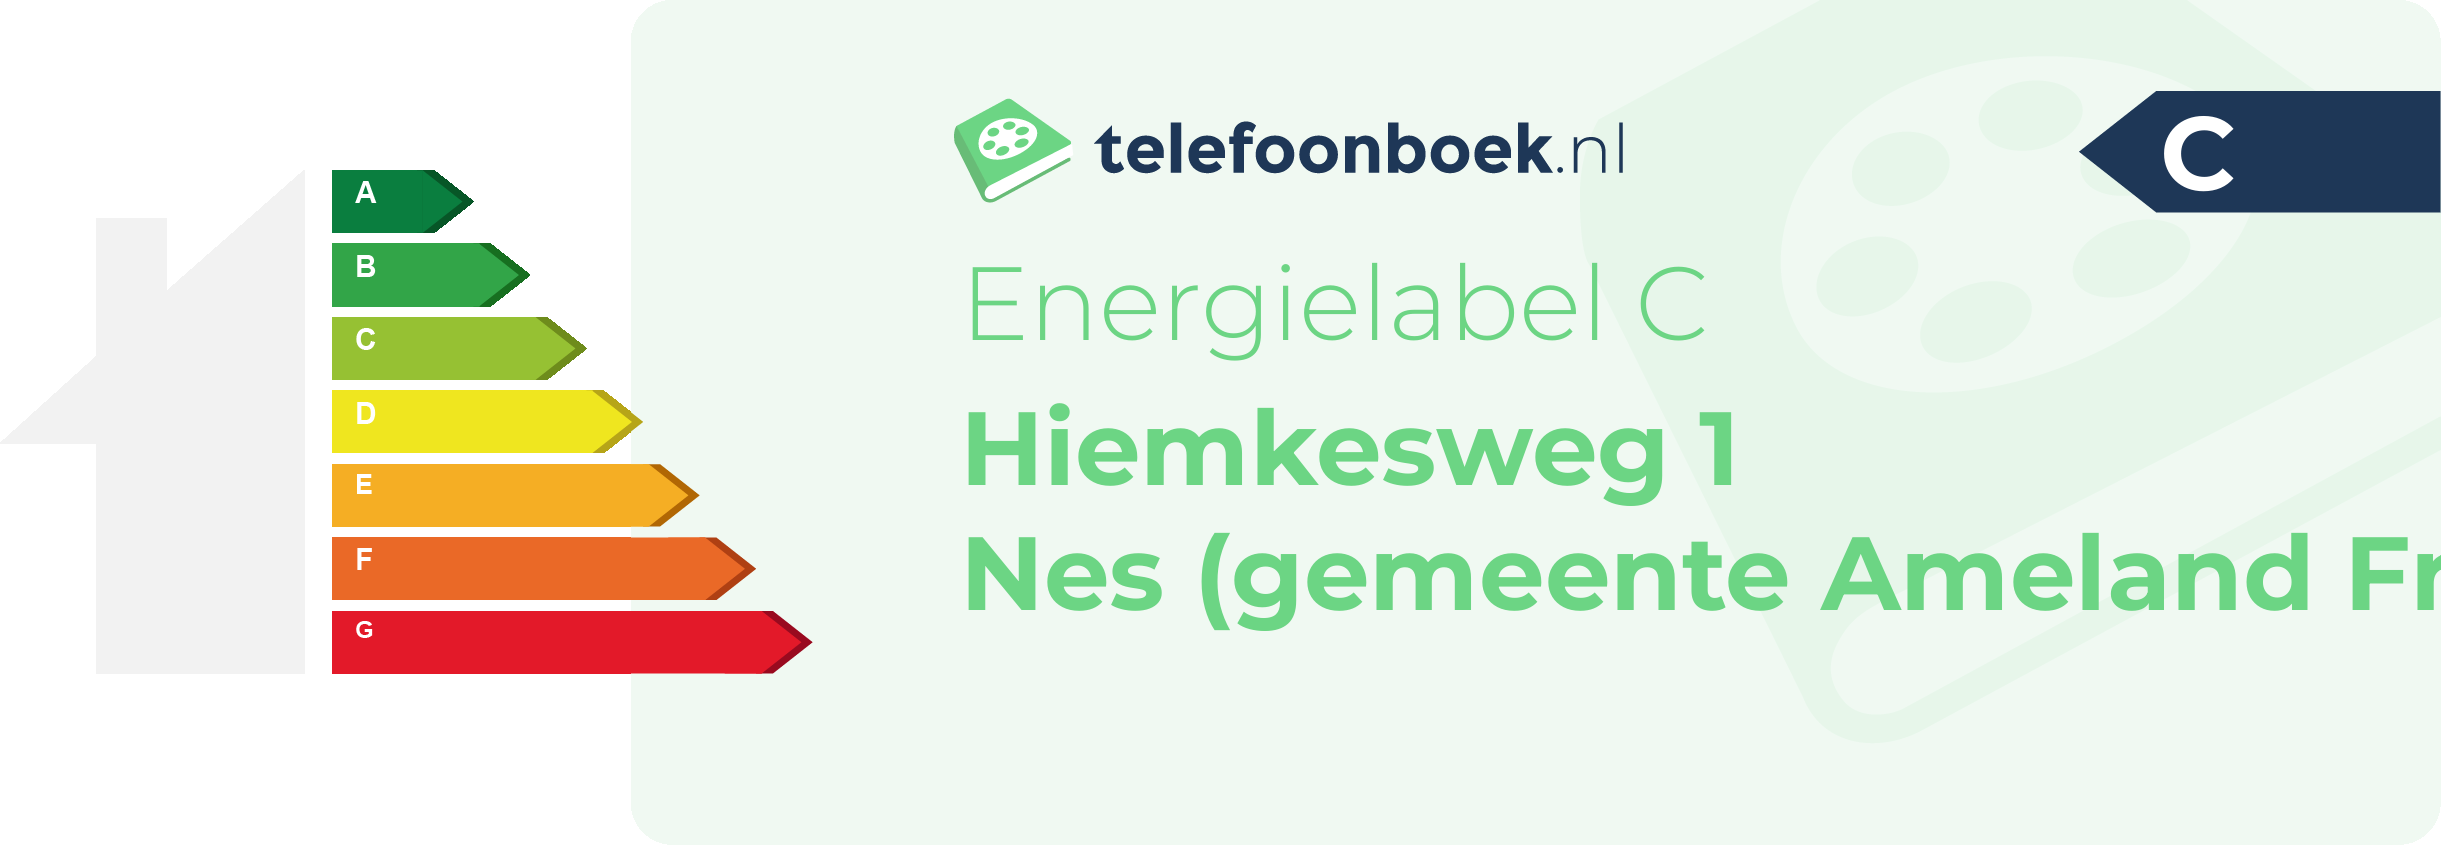 Energielabel Hiemkesweg 1 Nes (gemeente Ameland Friesland)